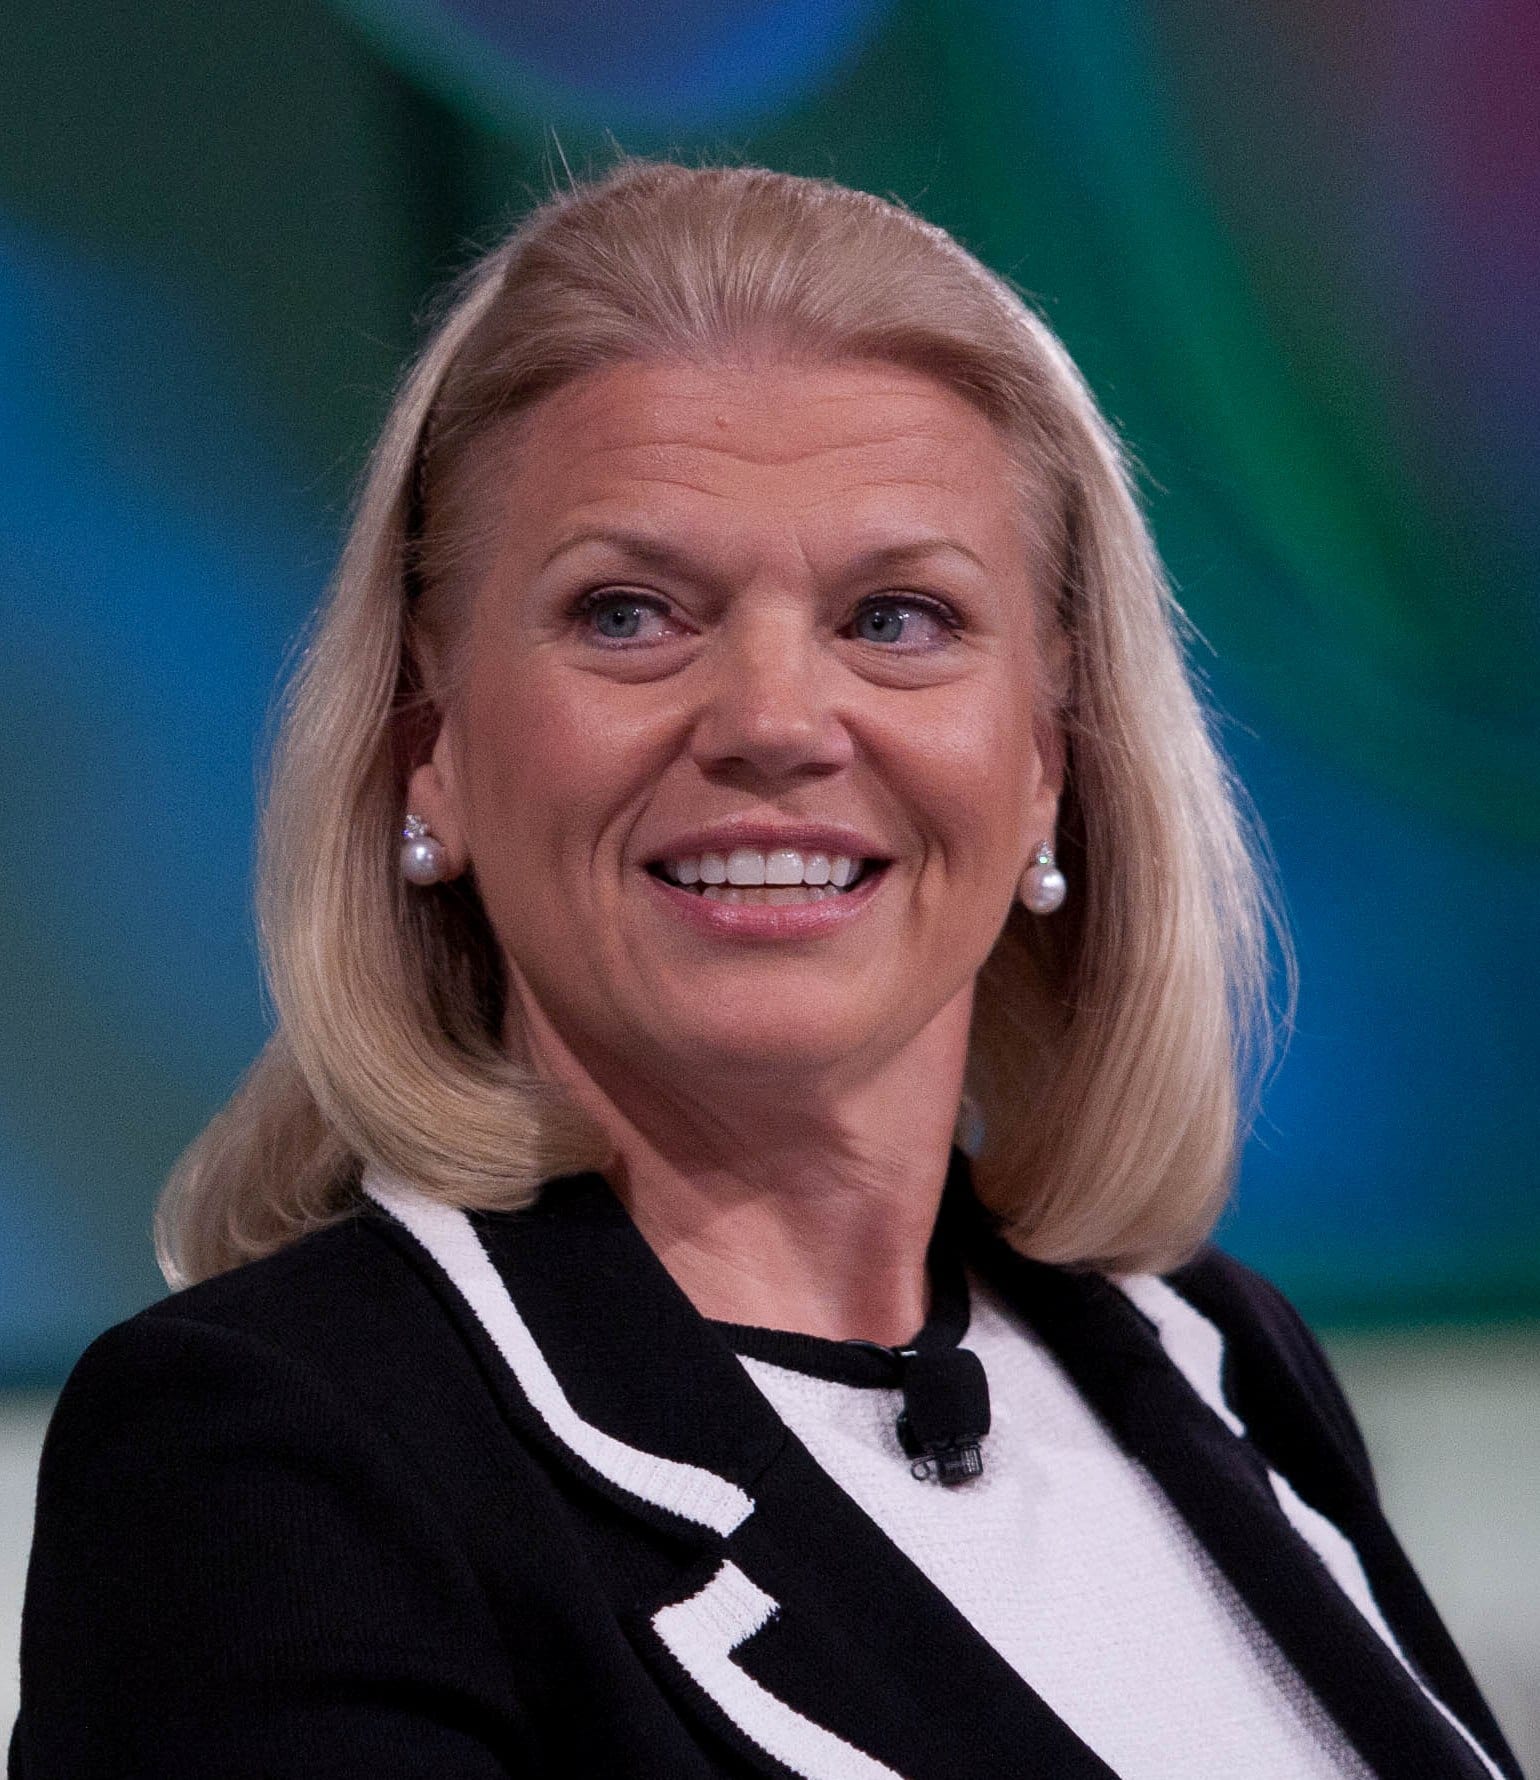 ¿Quién es el nuevo CEO de IBM?